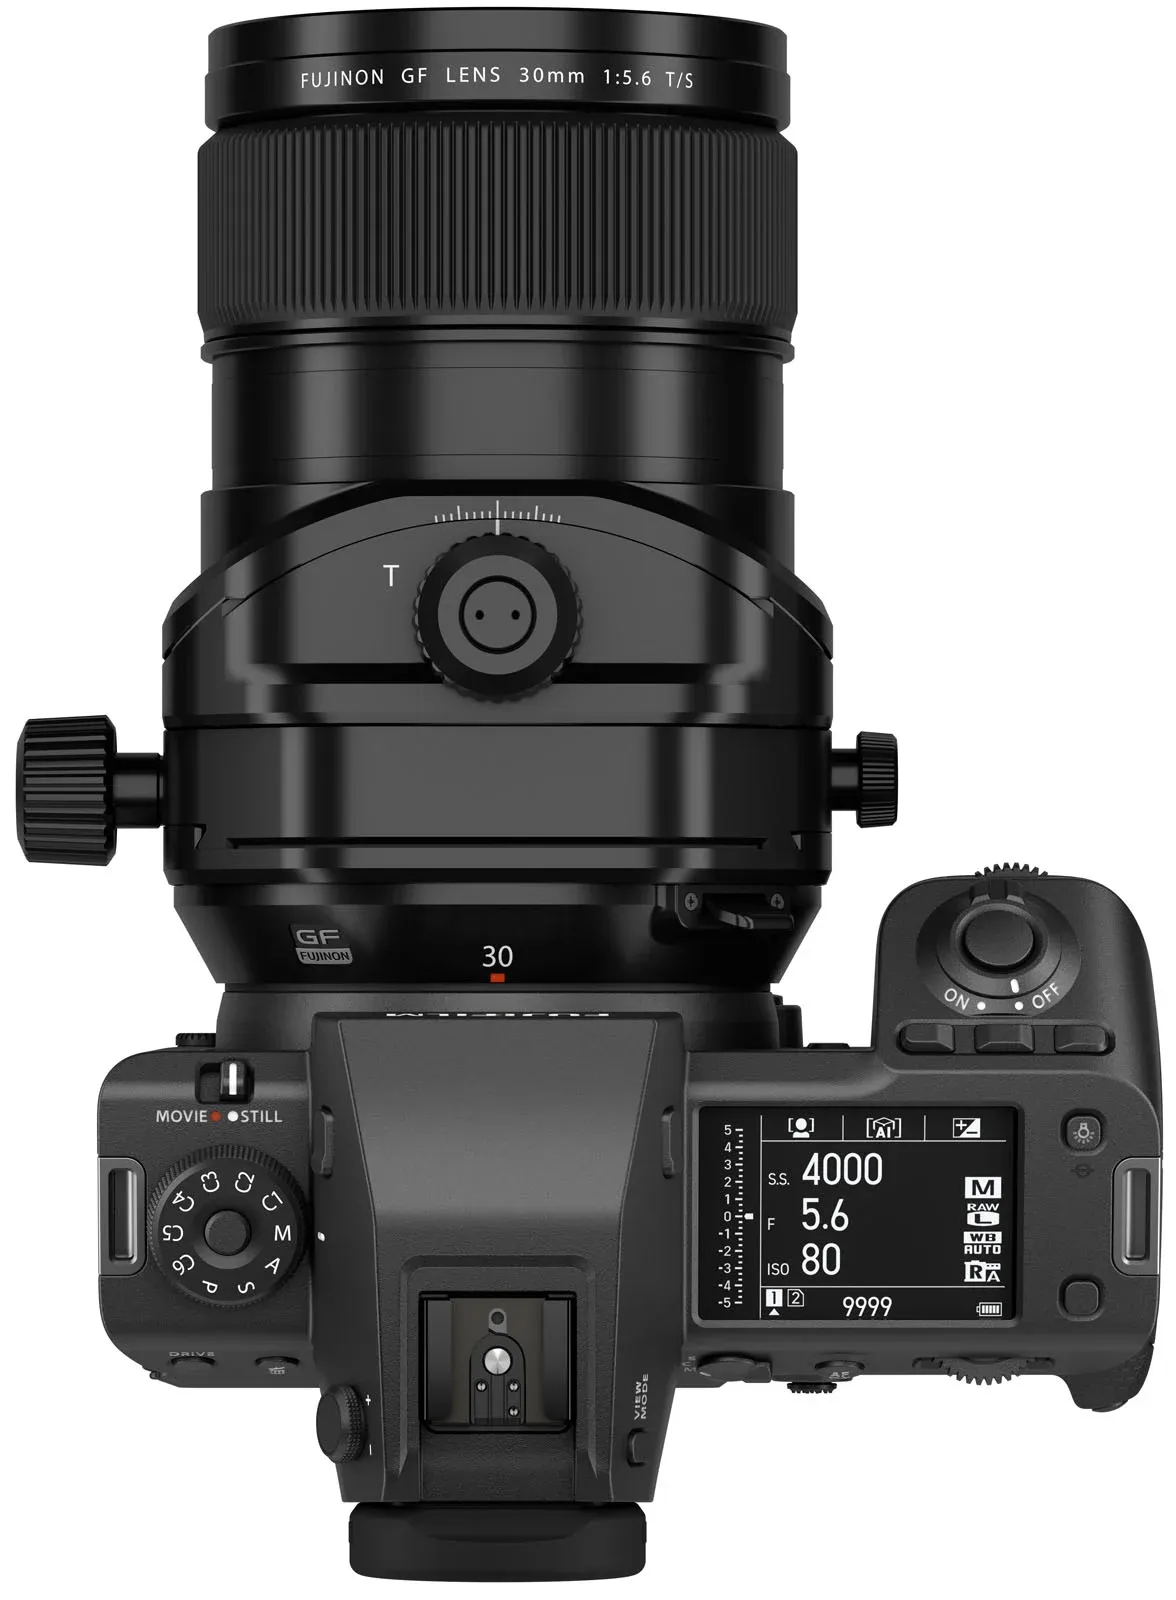 Fujifilm ra mắt máy ảnh Fujifilm GFX 100 II cùng hai ống kính tilt shift mới, cập nhật thêm ống kính 500mm vào lộ trình